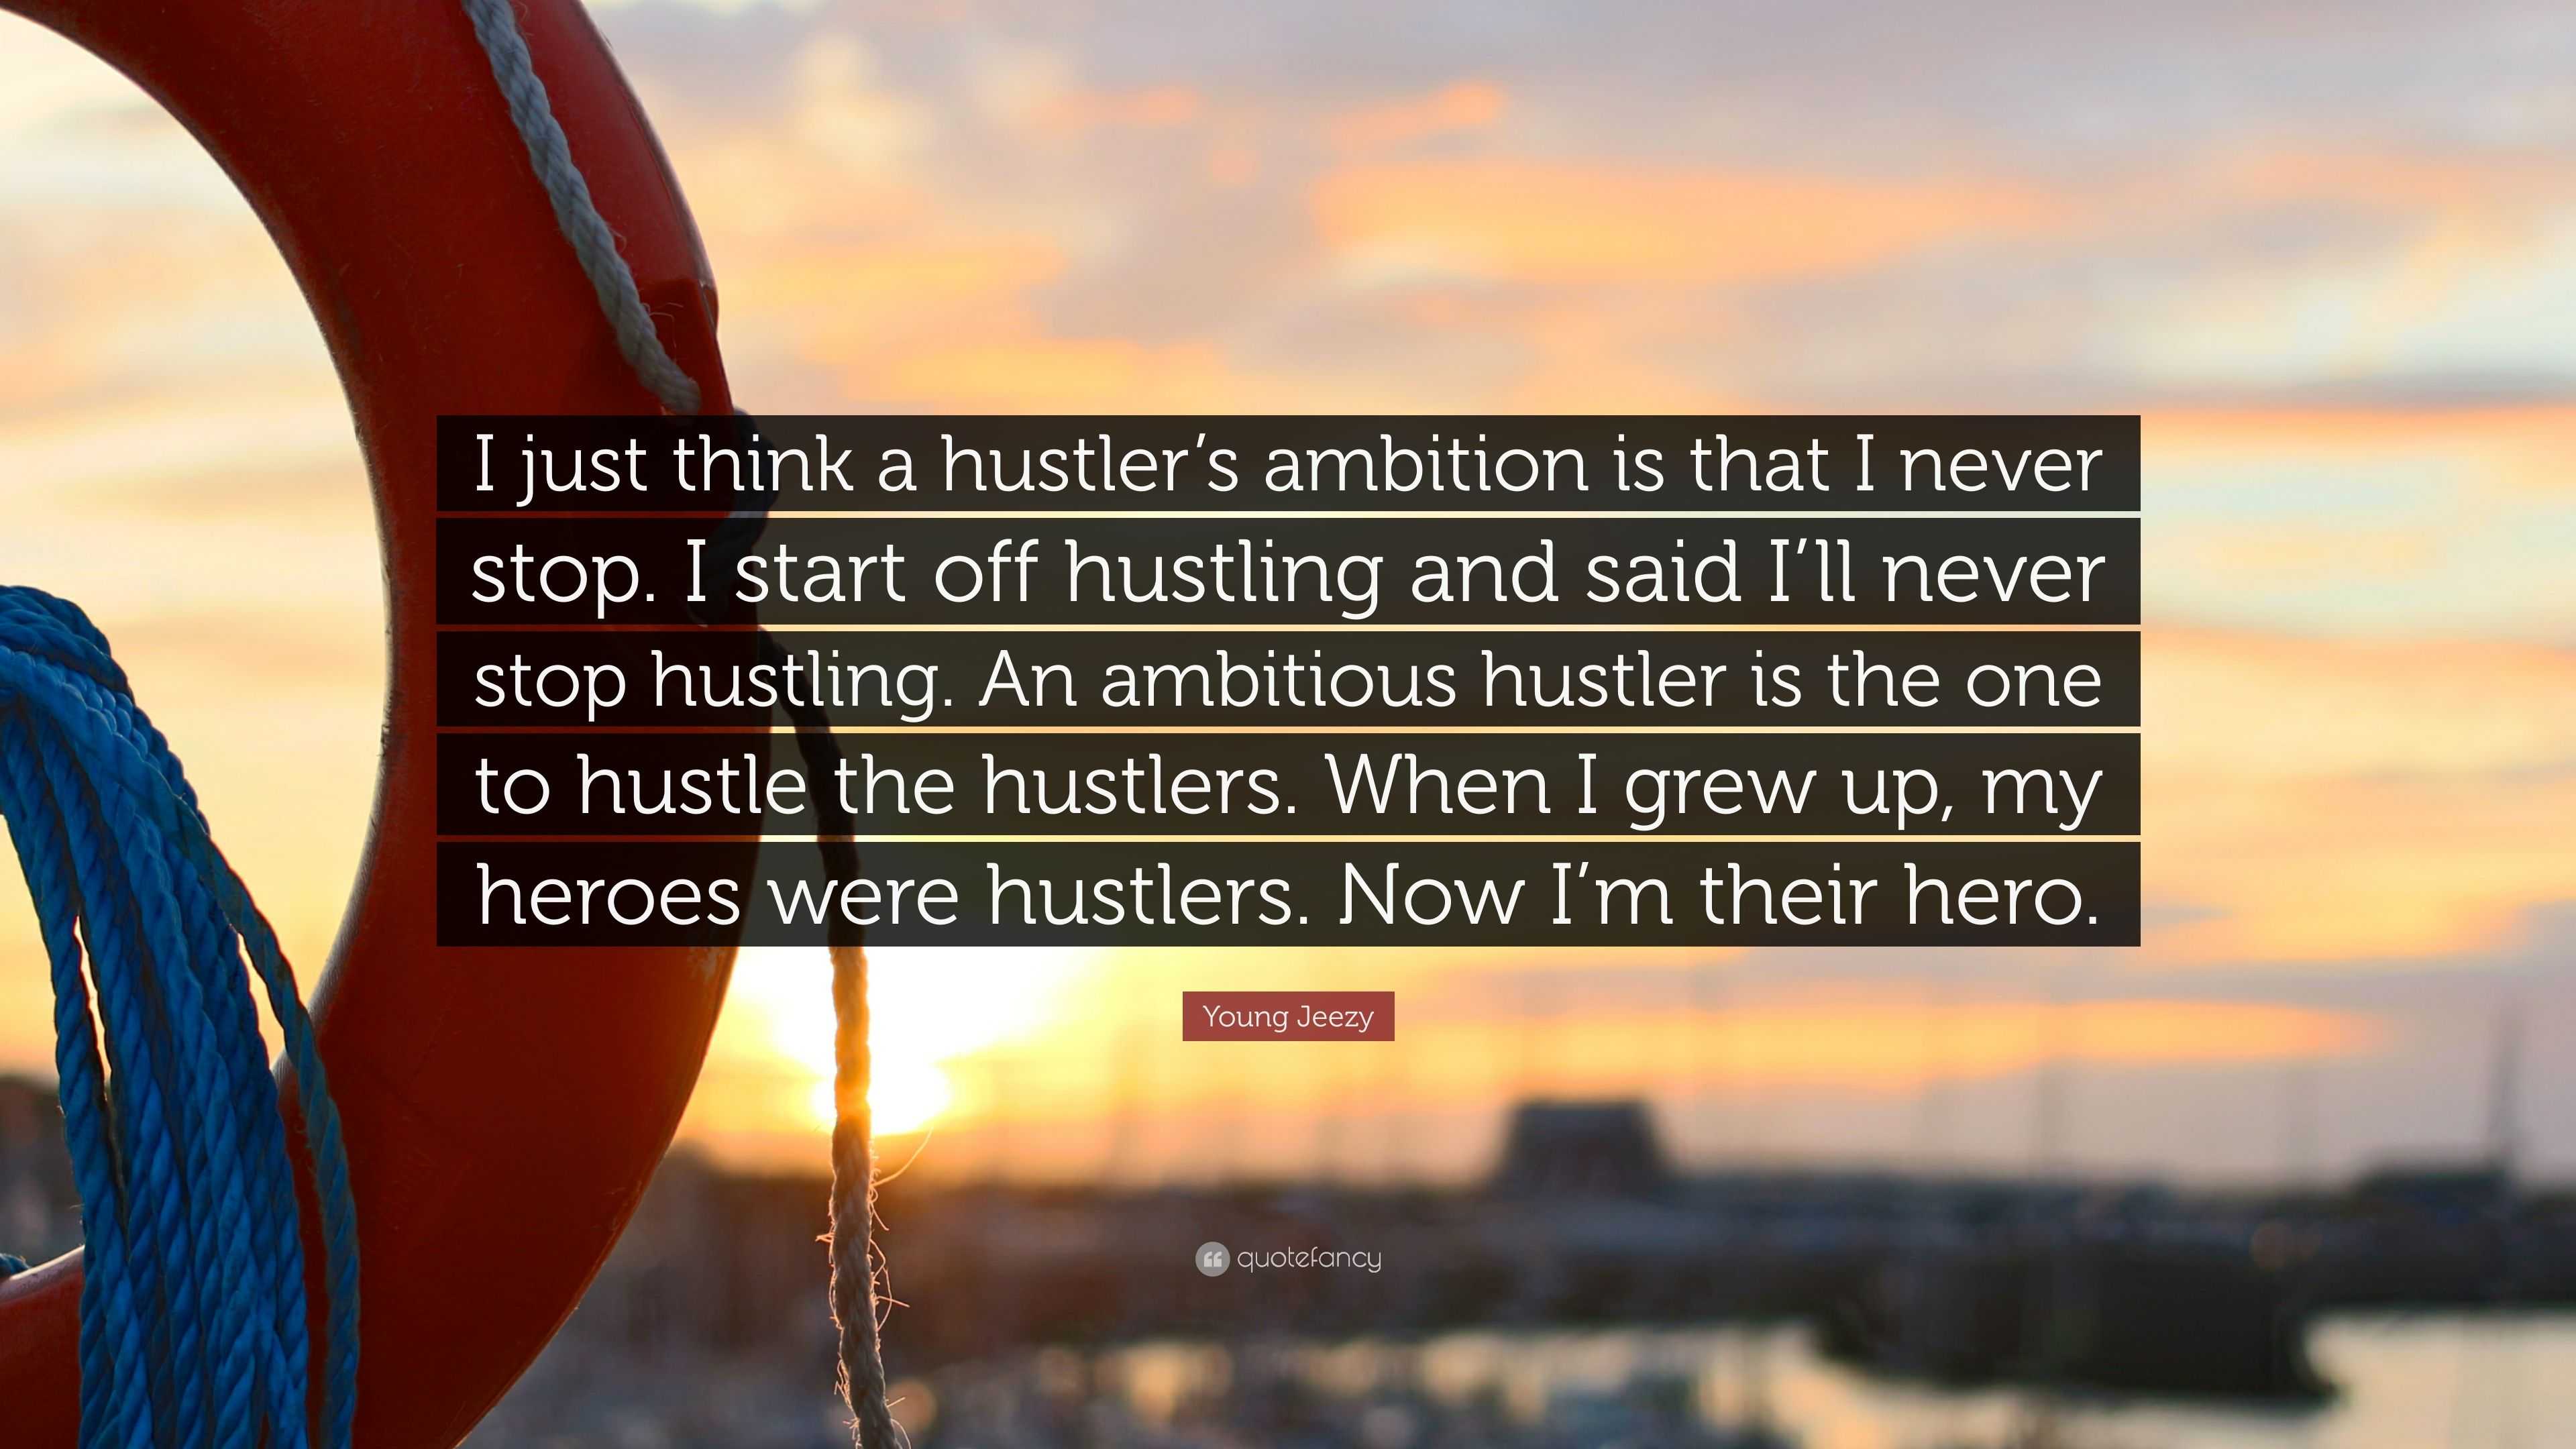 s ambition hustler